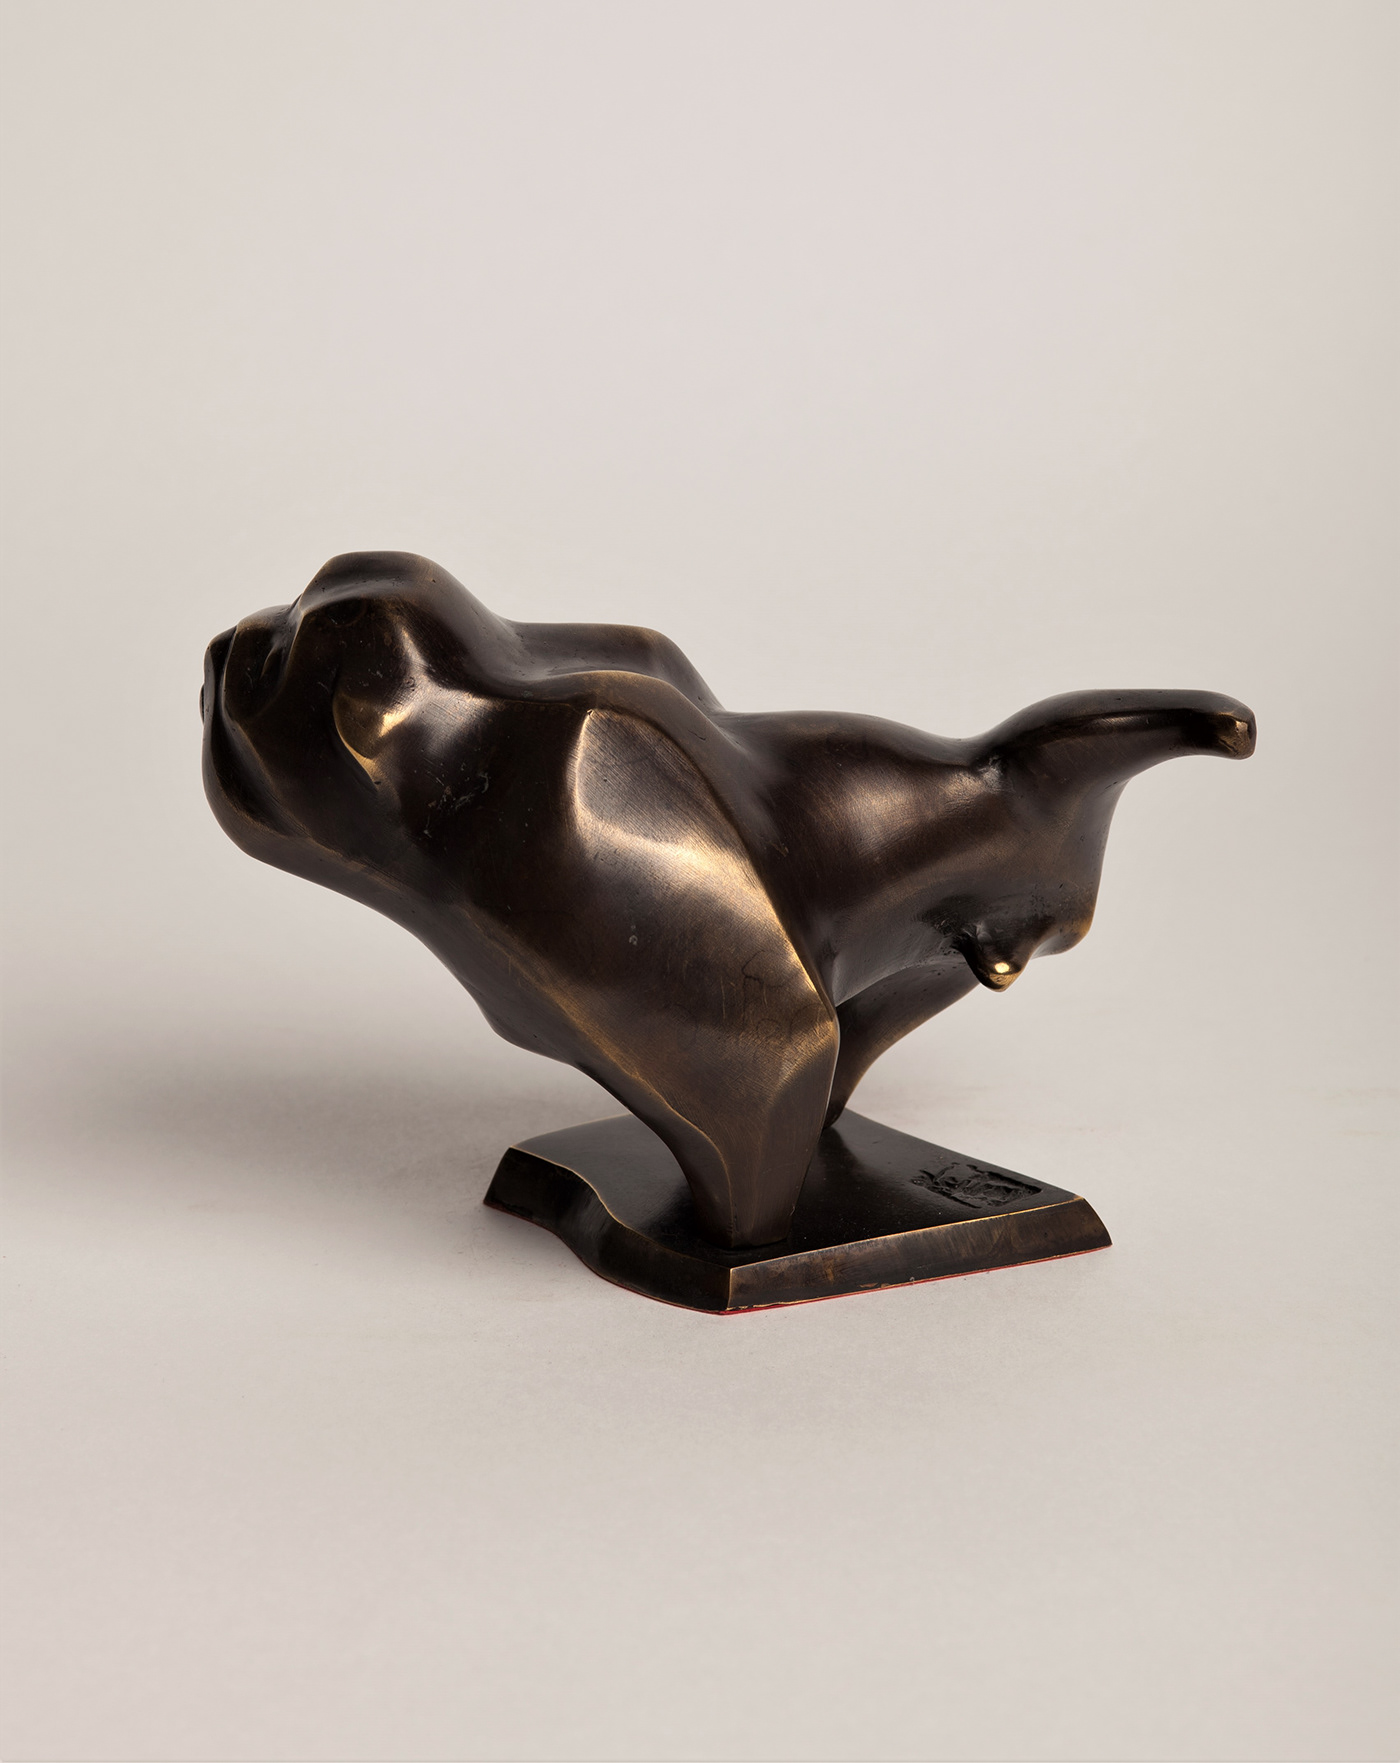 bronze bulldog contemporary dog figurative FINEART homedeco sulpture